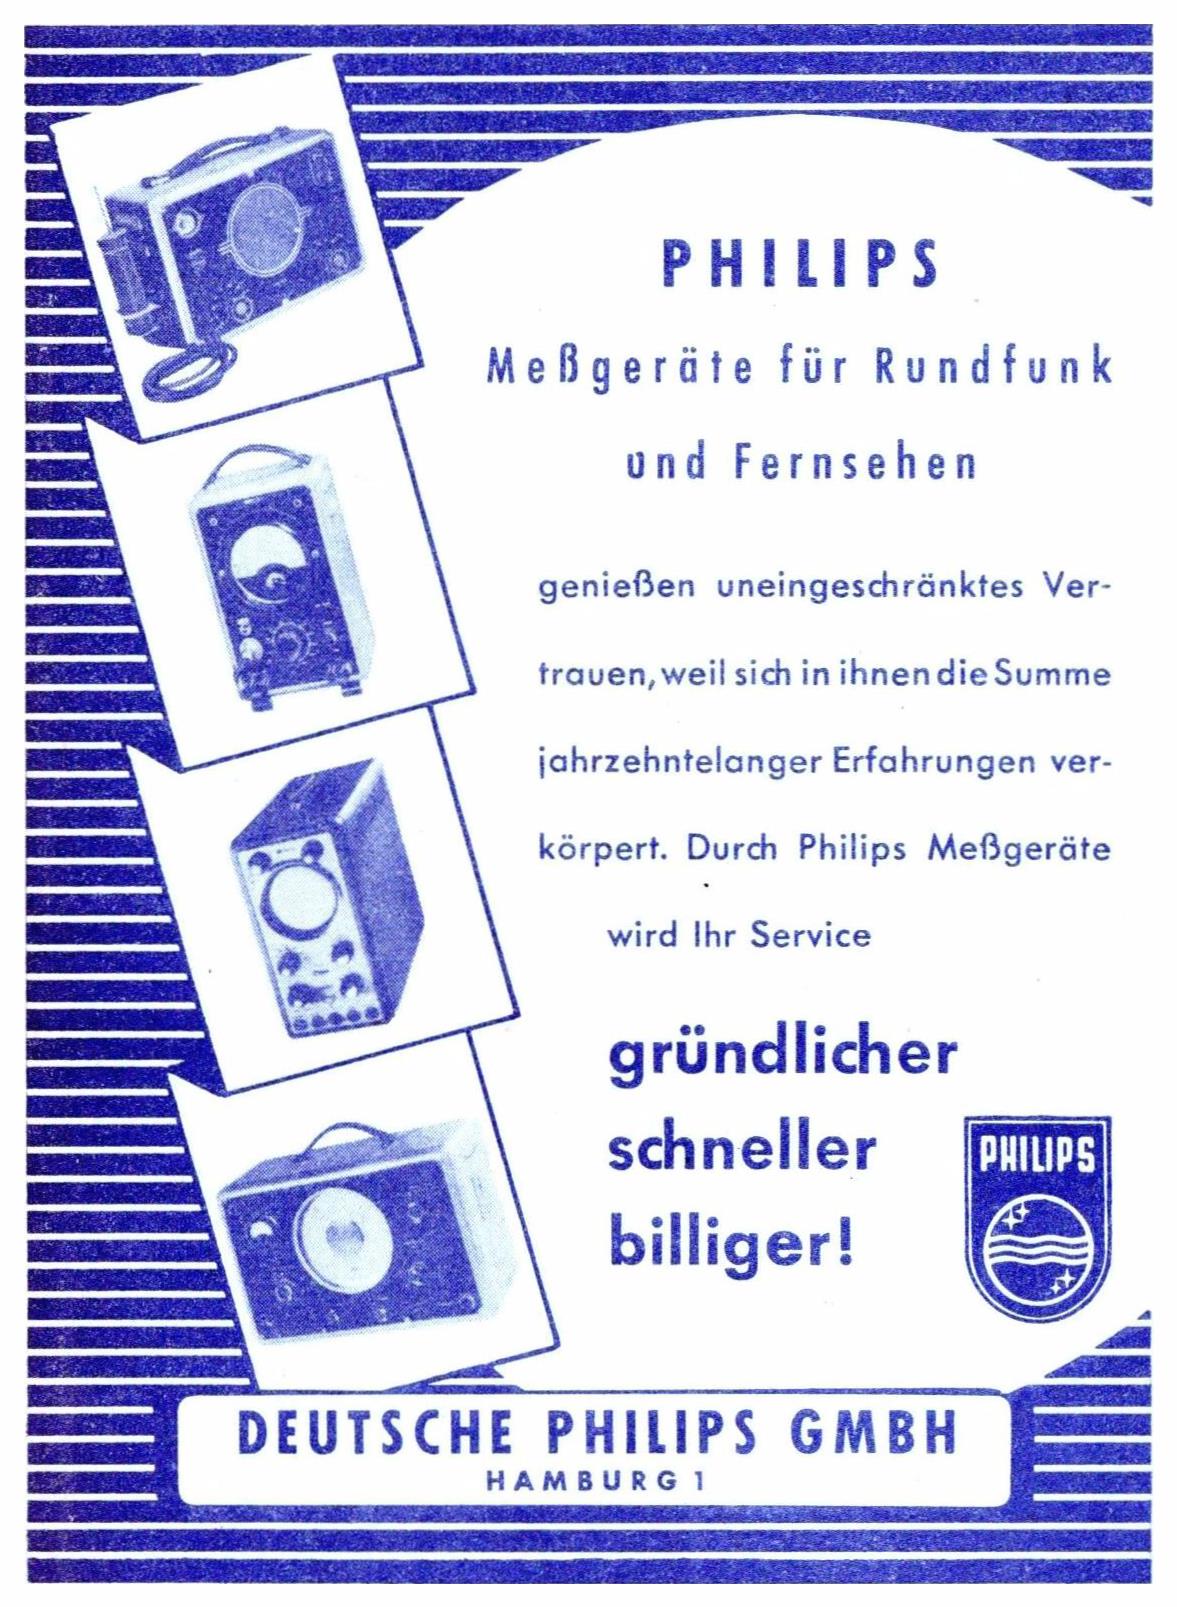 Philips 1952 011.jpg